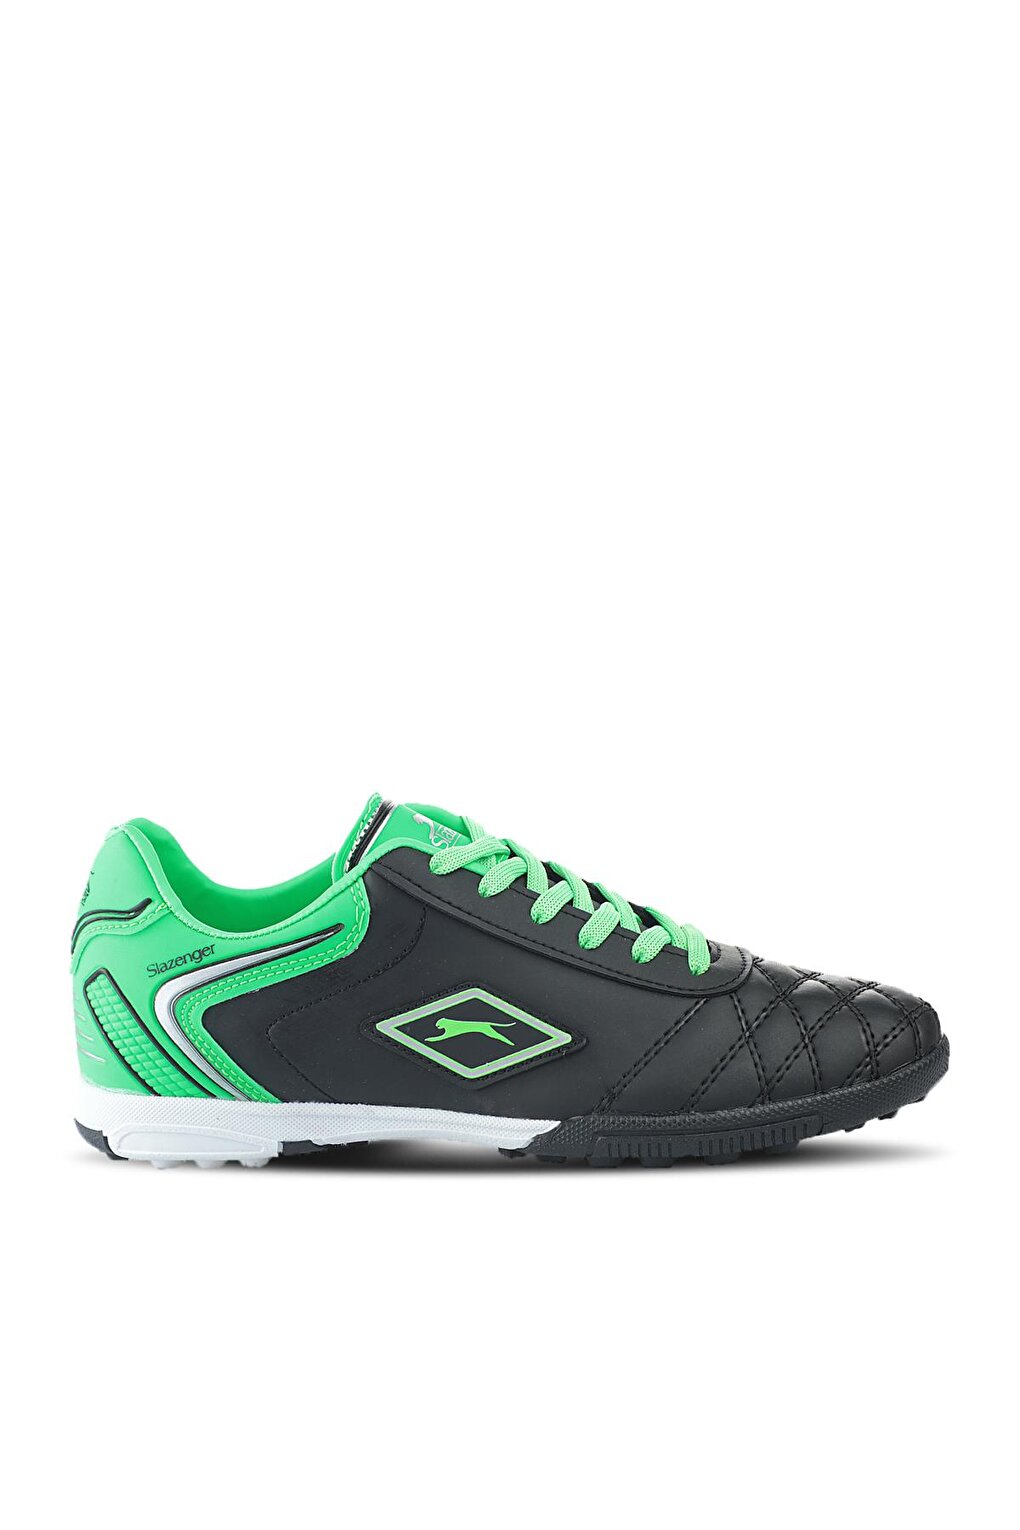 Футбольные кроссовки для мальчиков HUGO HS Astroturf, черные/зеленые SLAZENGER